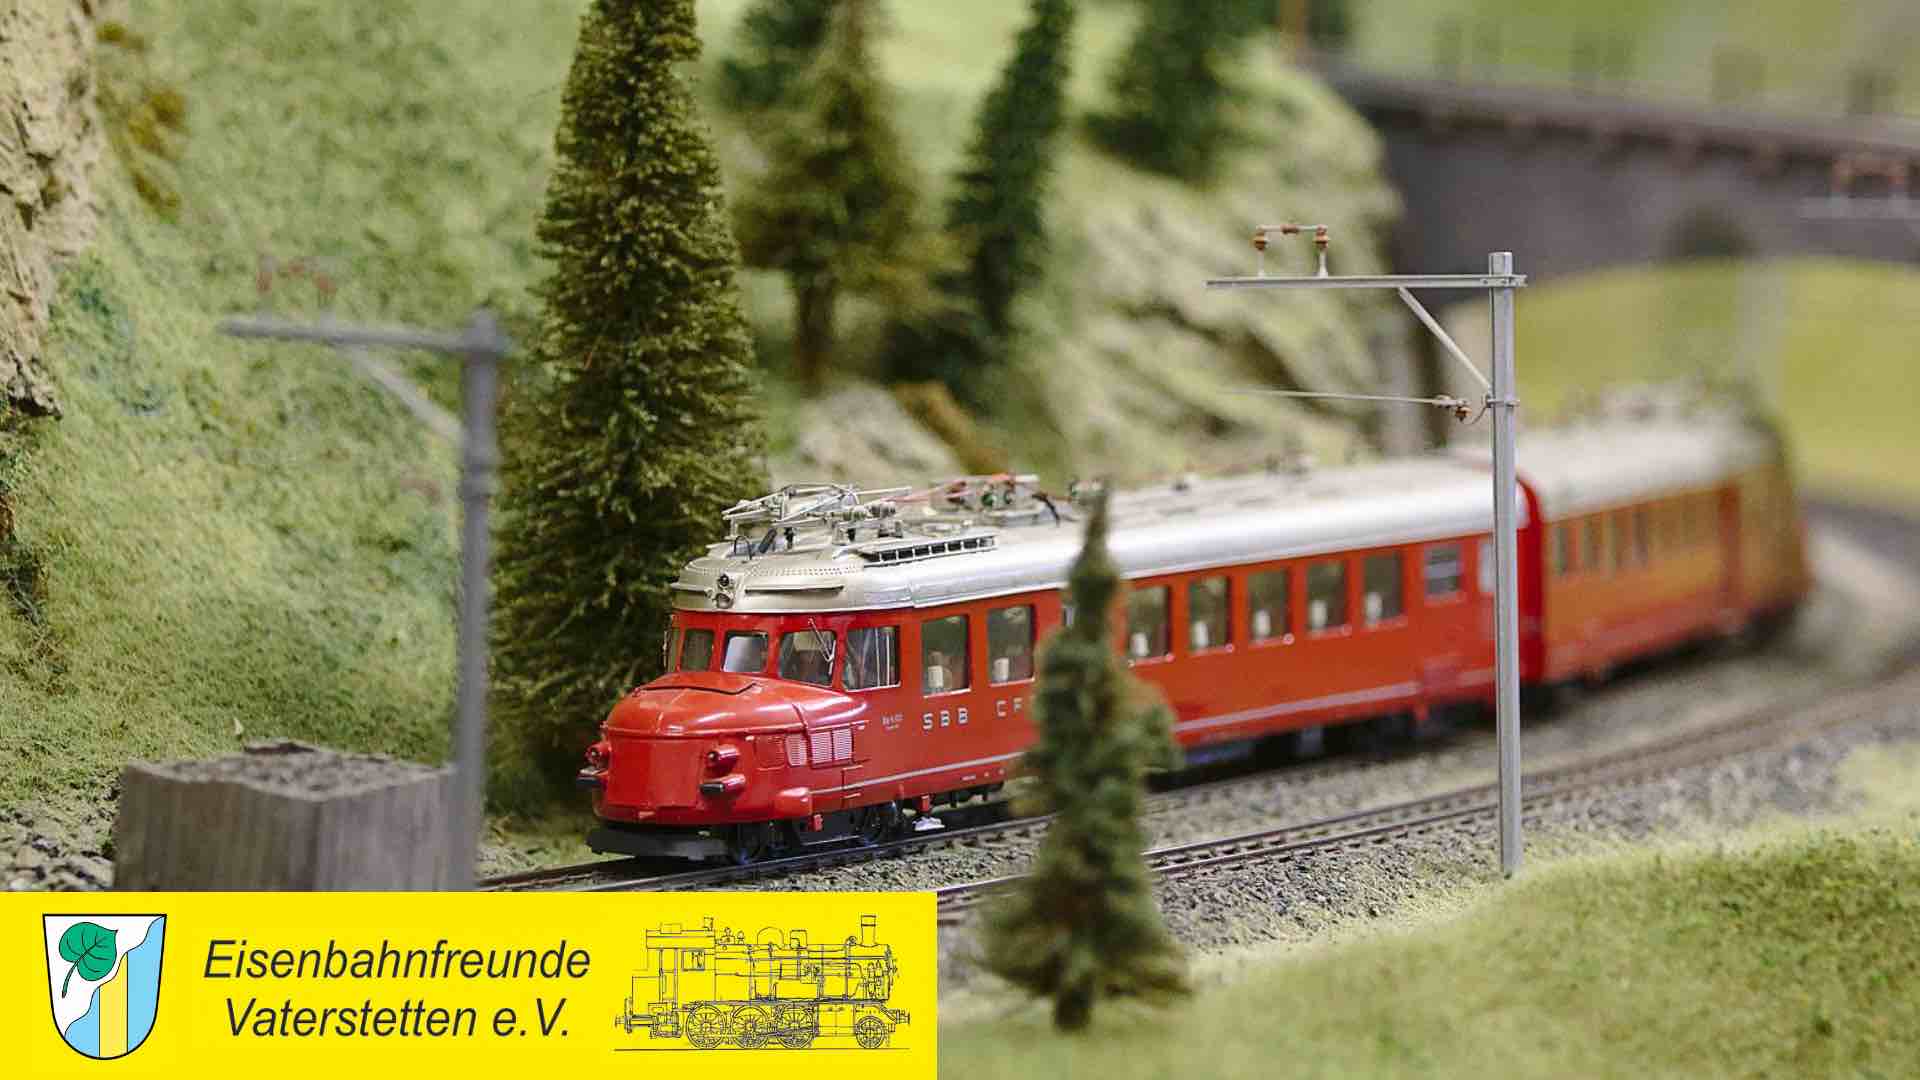 3. Modellbahnausstellung beim Reitsberger Hof